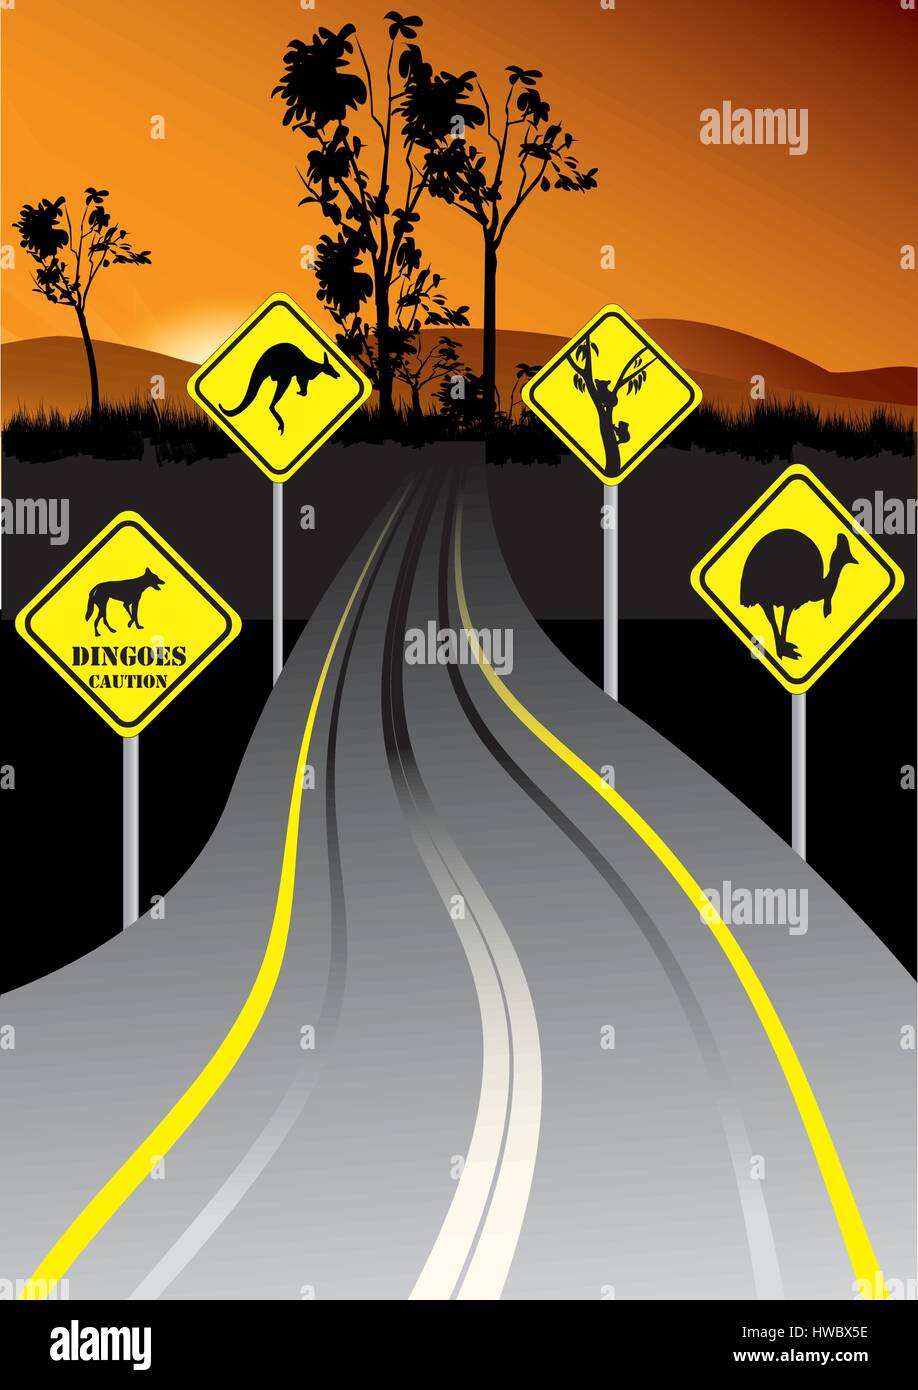 La signalisation routière australienne au bord de la route dans le coucher du soleil Illustration de Vecteur